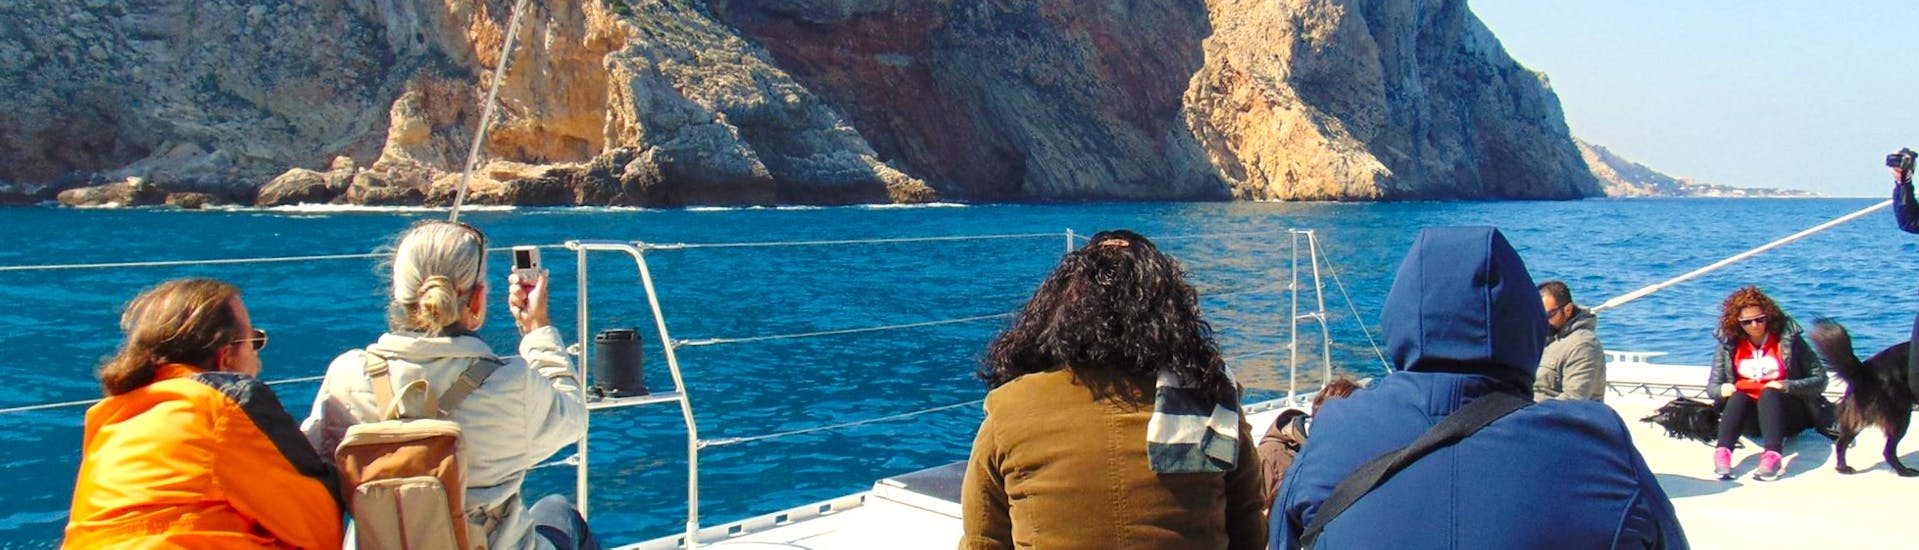 Un gruppo di partecipanti in una giornata di sole si gode la Costa del Sol su un catamarano a vela ecologico durante una gita in barca a vela con Mundo Marino Costa del Sol.